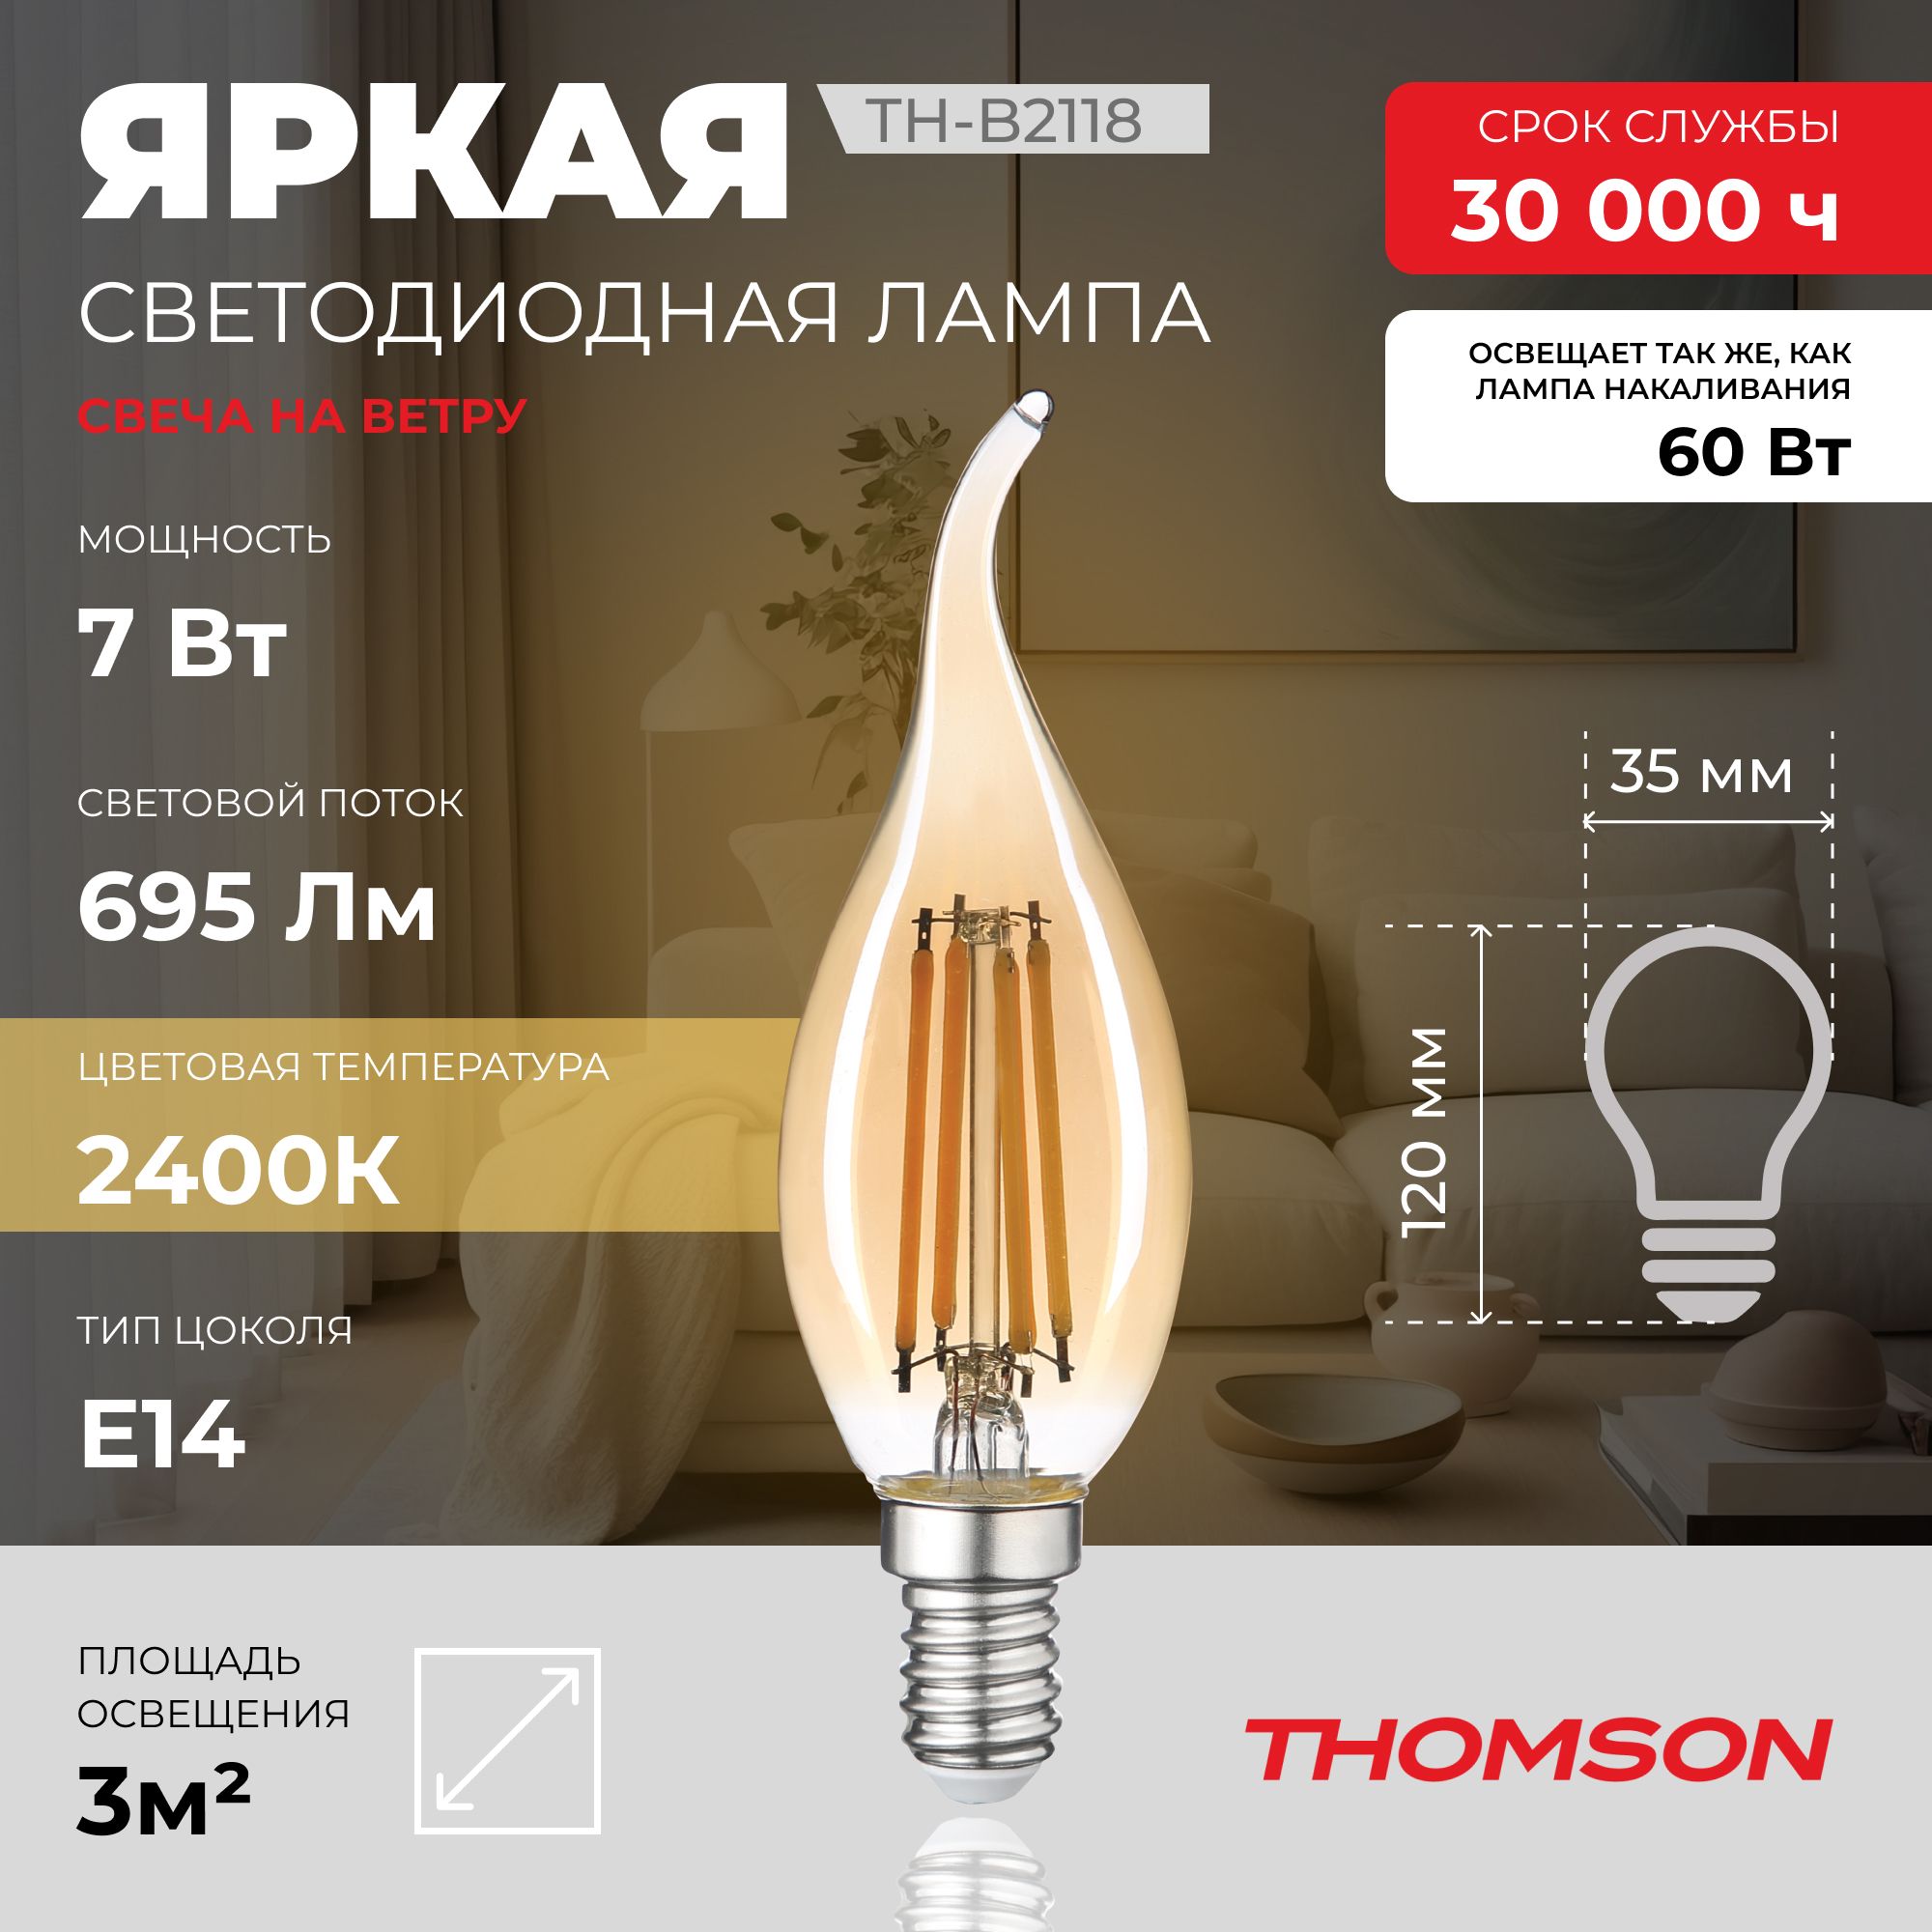 ЛампочкаThomsonфиламентнаяTH-B21187Вт,E14,2400K,свечанаветру,теплыйбелыйсвет